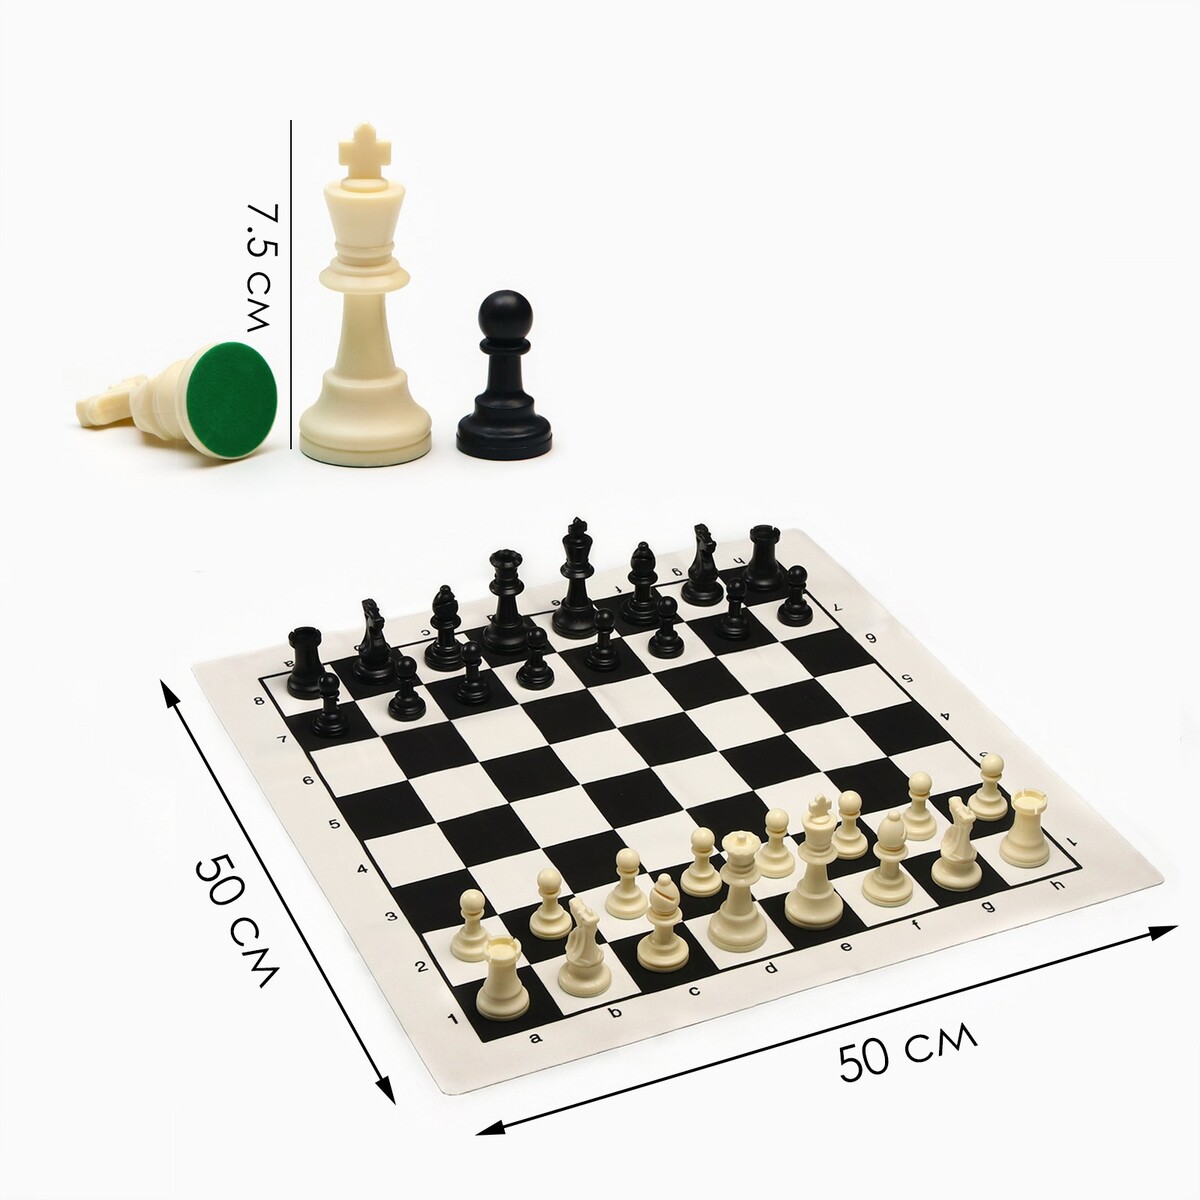 Шахматы в пакете, фигуры (пешка h-4.5 см, ферзь h-7.5 см), поле 50 х 50 см убийство на поле для гольфа